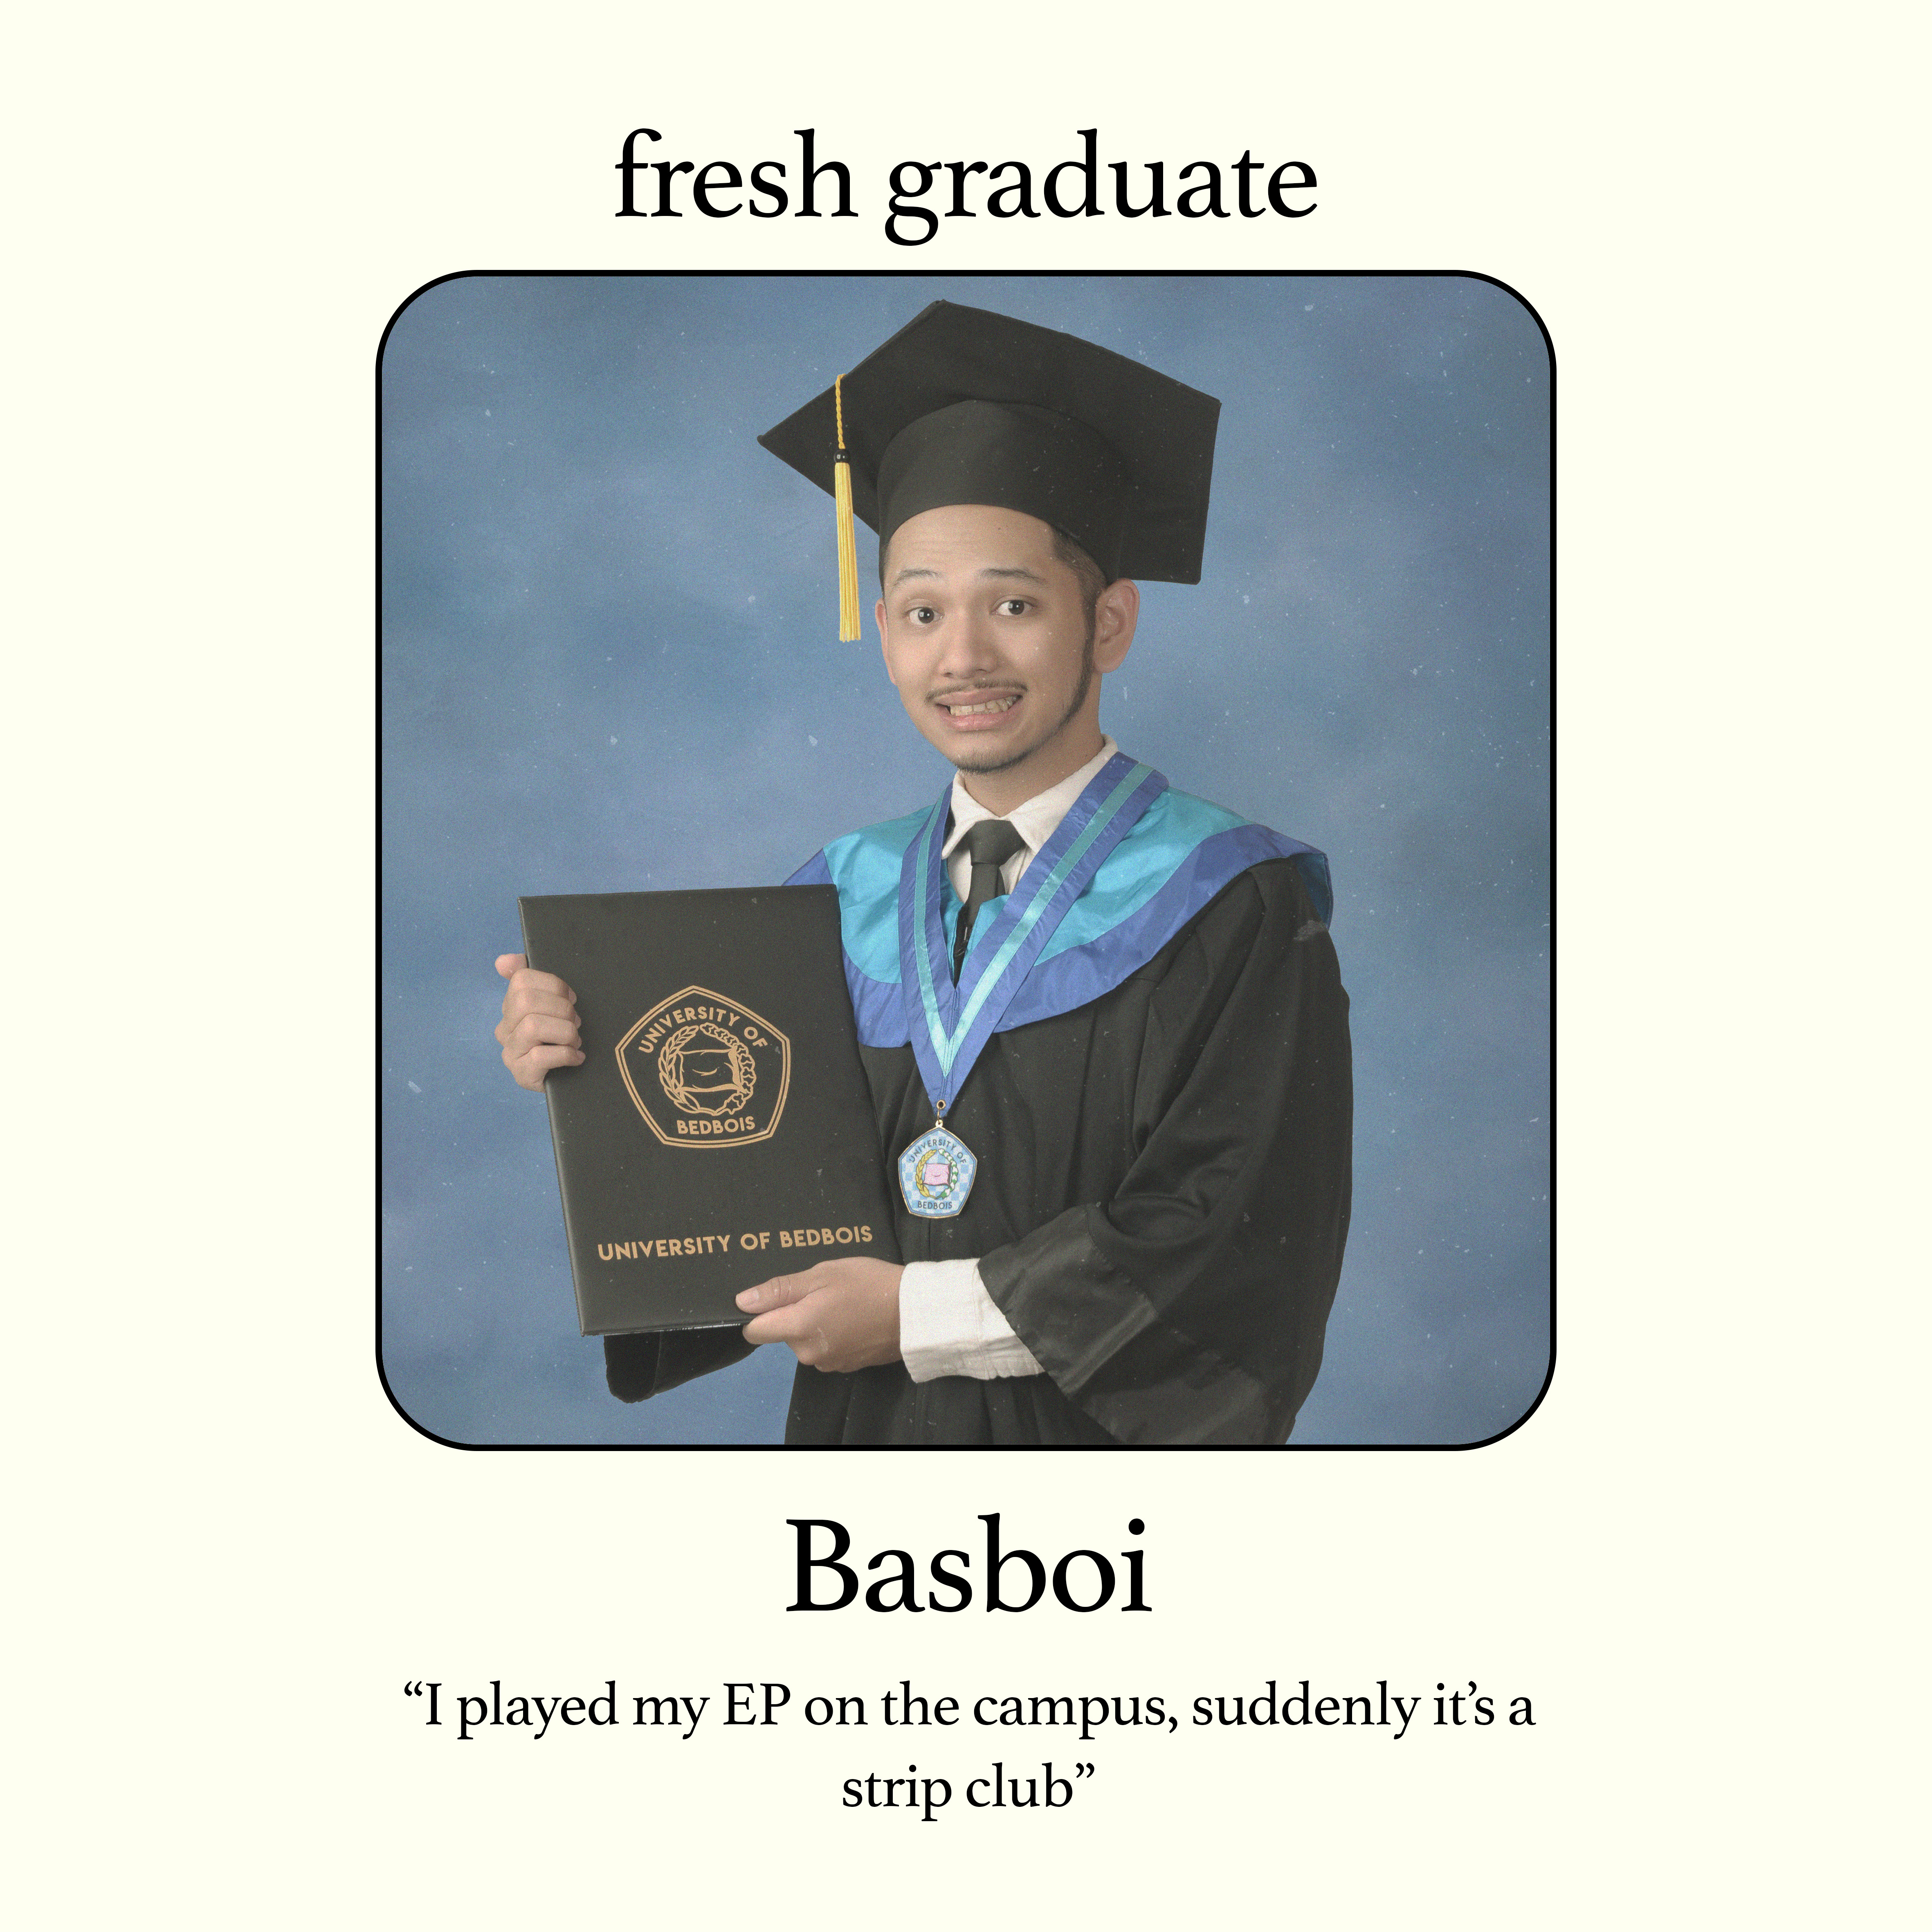 Basboi Perjuangkan Musiknya lewat Fresh Graduate